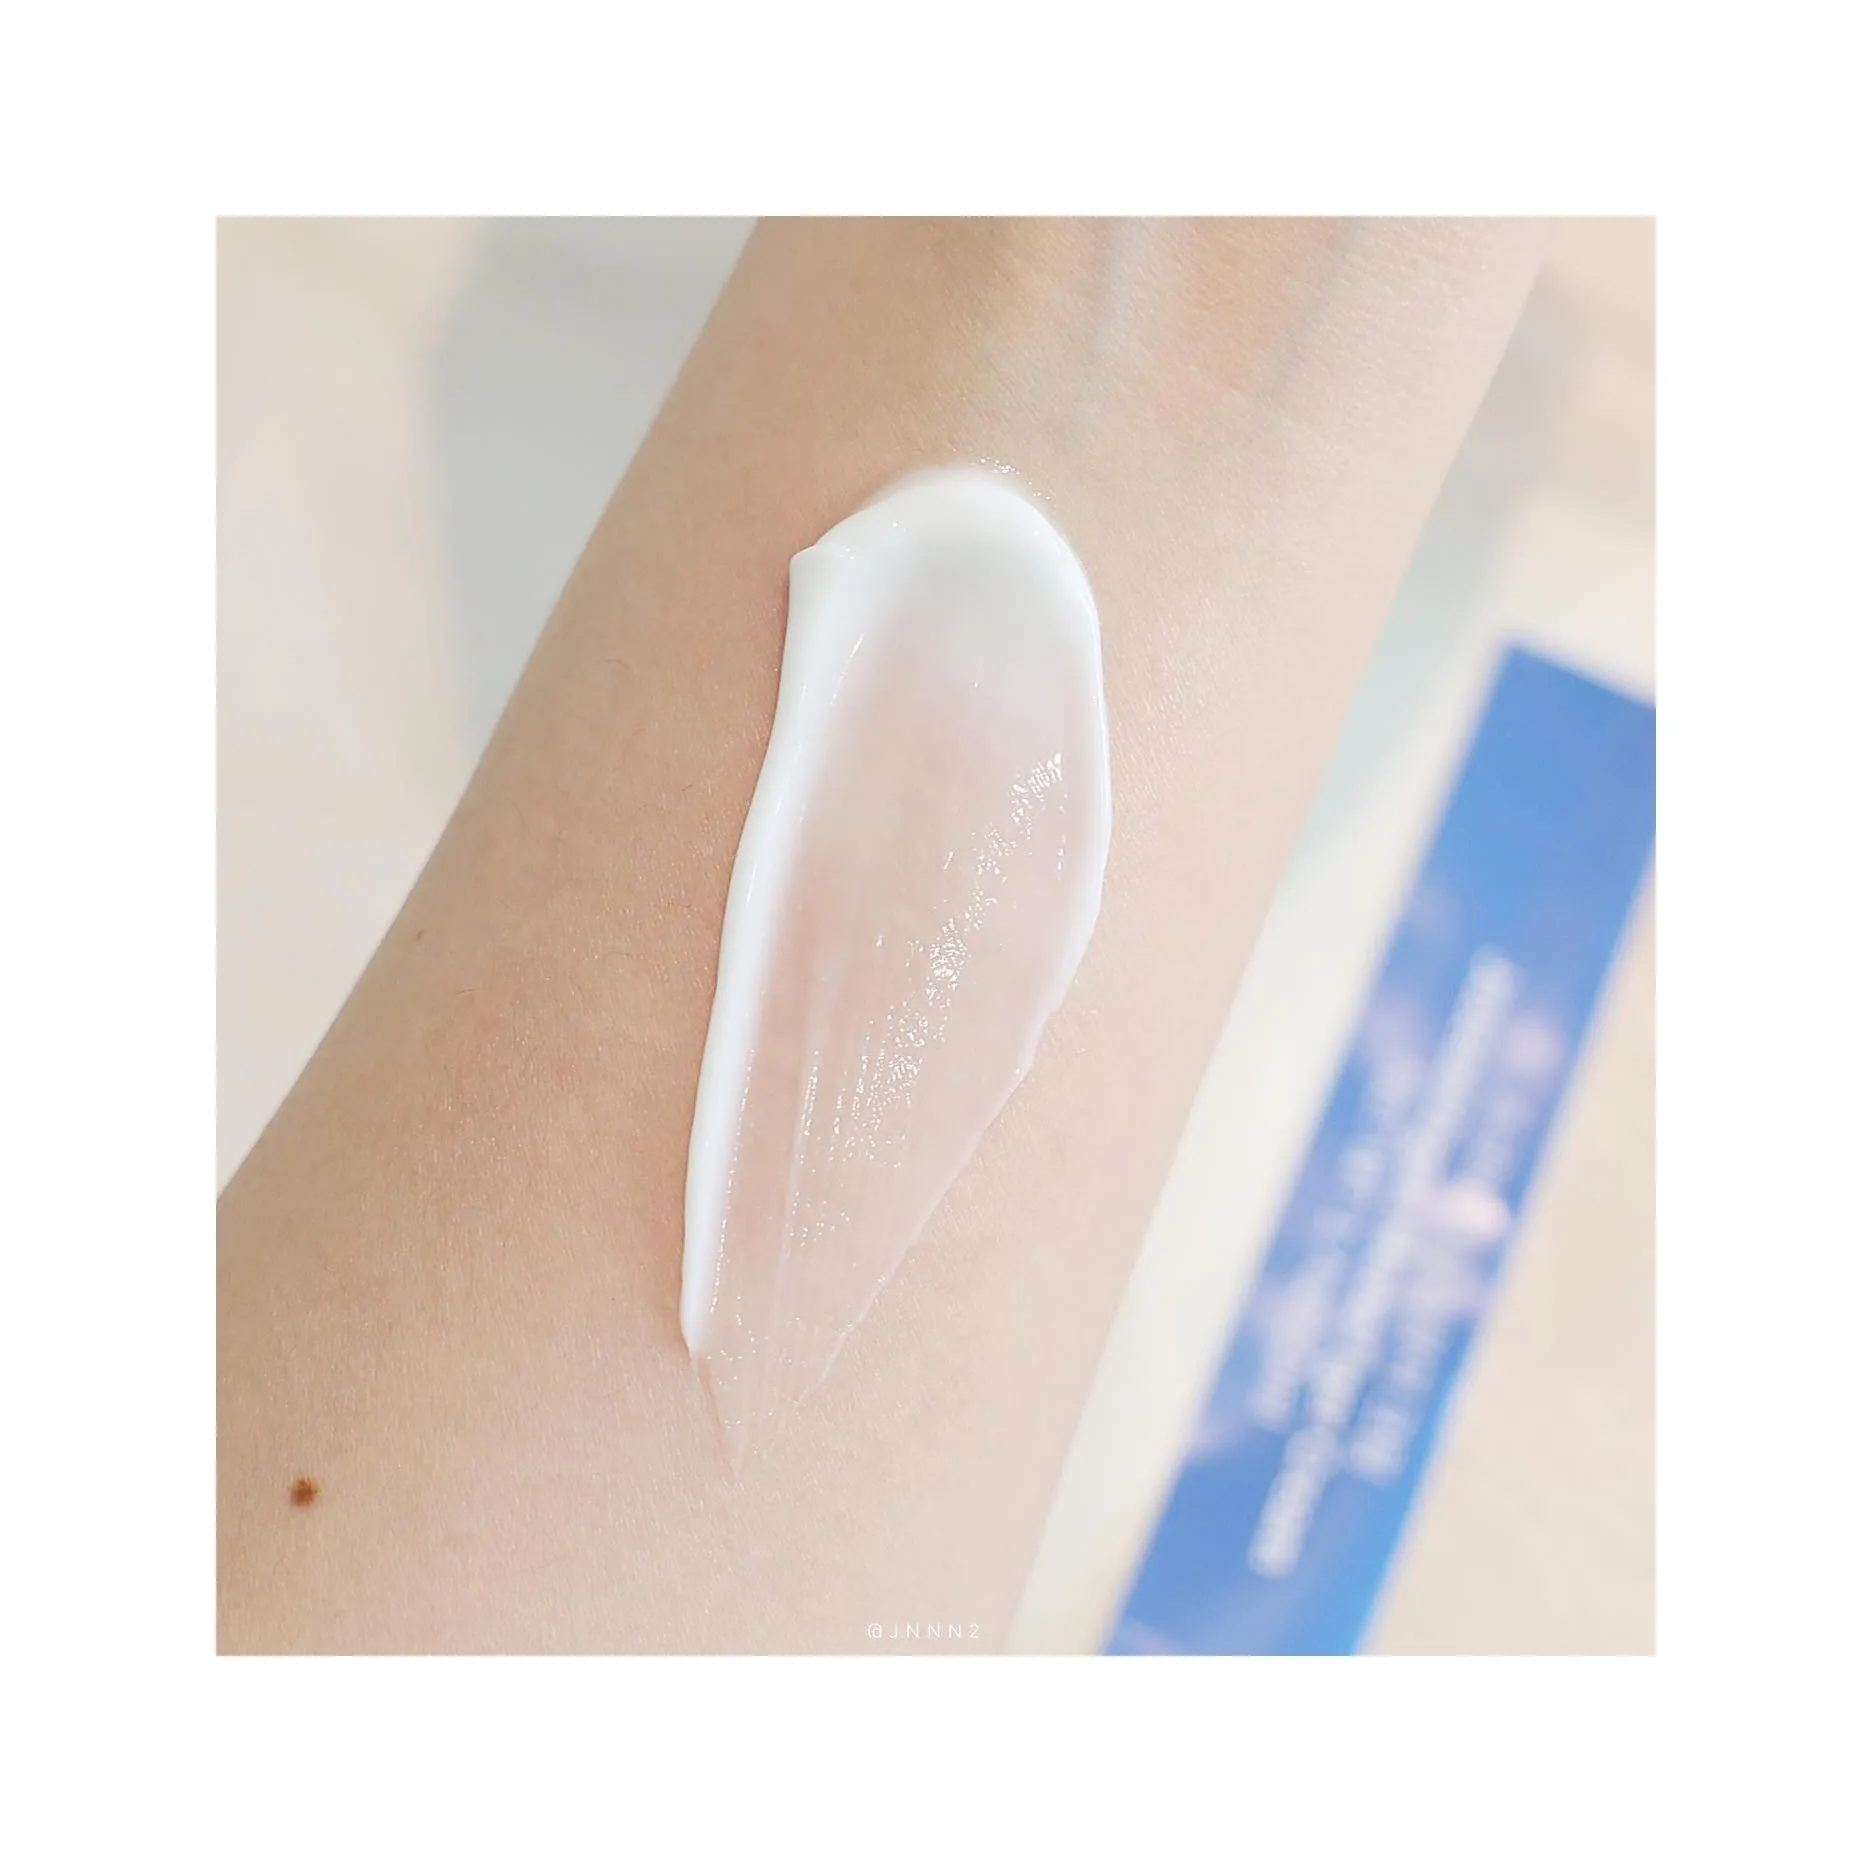 फेस क्रीम फेशियल मॉइस्चराइजर एंटी एजिंग झुर्रियाँ फेस लोशन व्हाइटनिंग क्रीम सूखी त्वचा तैलीय त्वचा के लिए